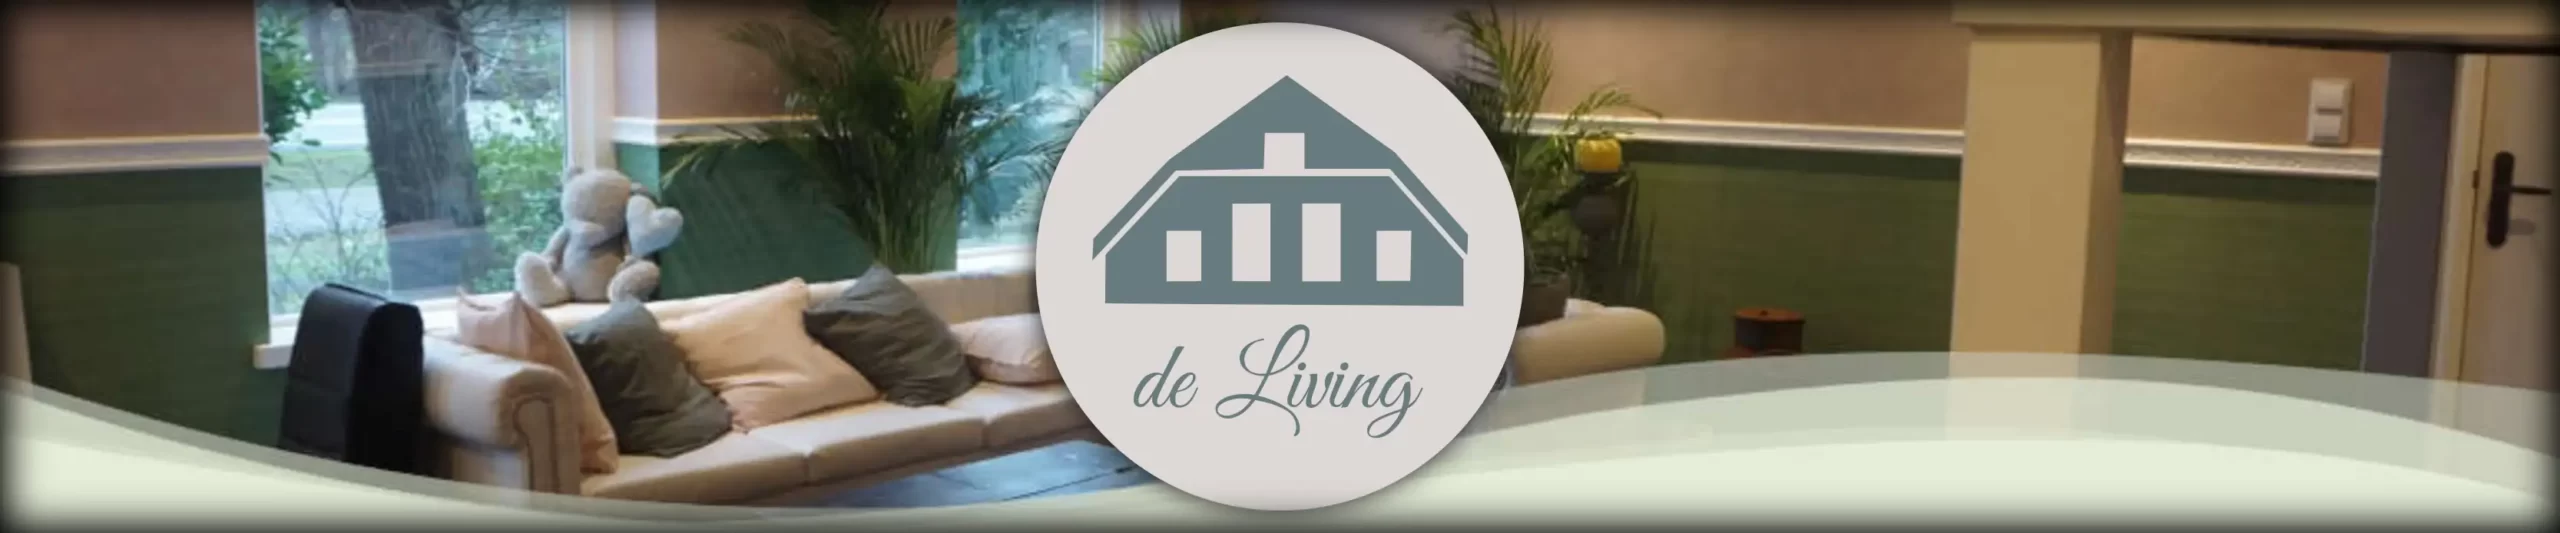 Psychologiepraktijk de Living Zwolle - banner met logo